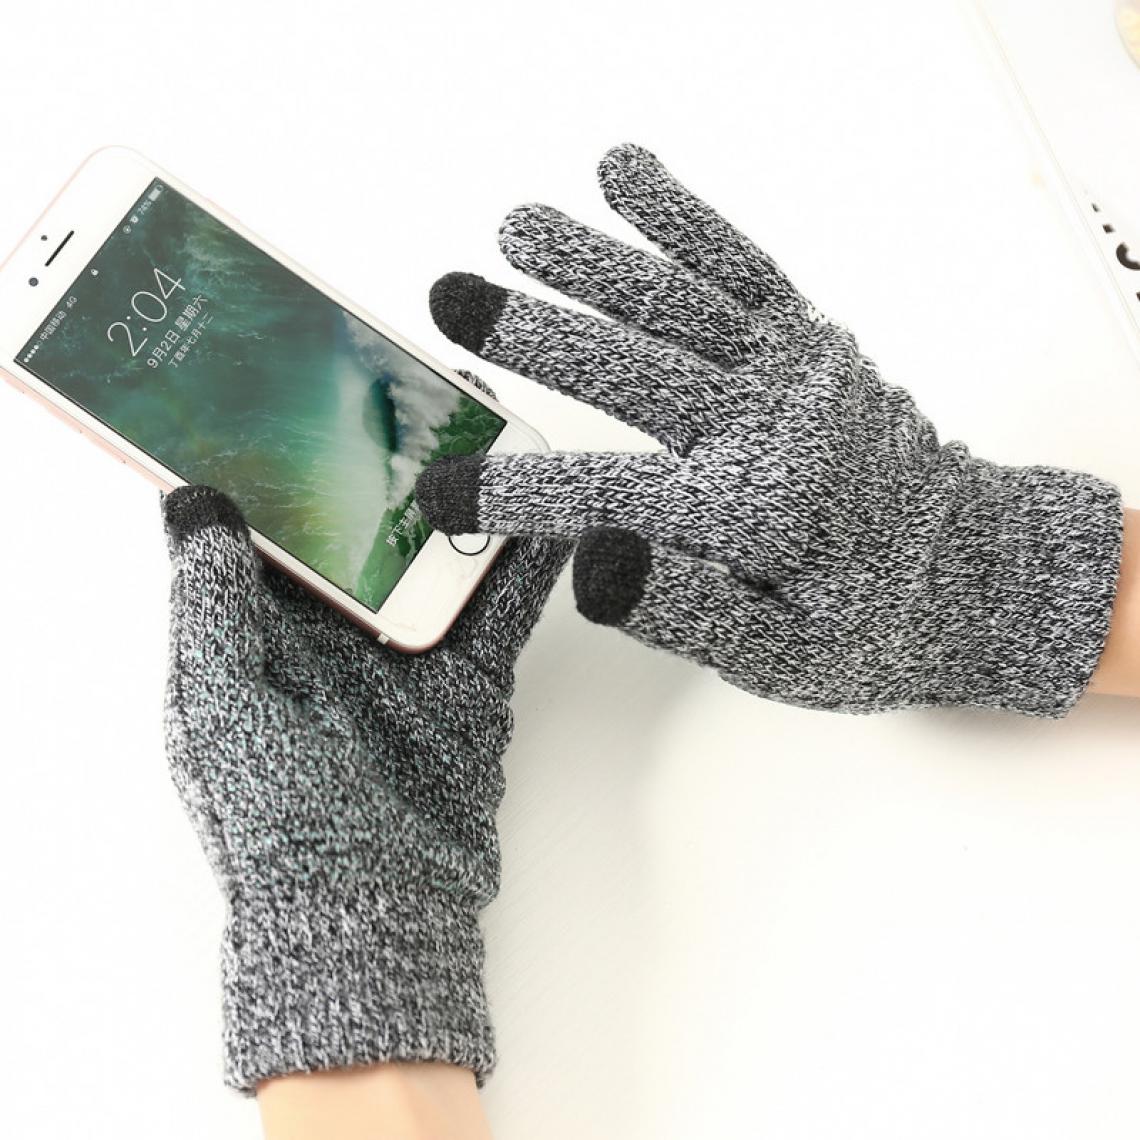 Shot - Gants Homme tactiles pour GOOGLE Pixel 3 Smartphone Taille M 3 doigts Hiver (NOIR) - Autres accessoires smartphone